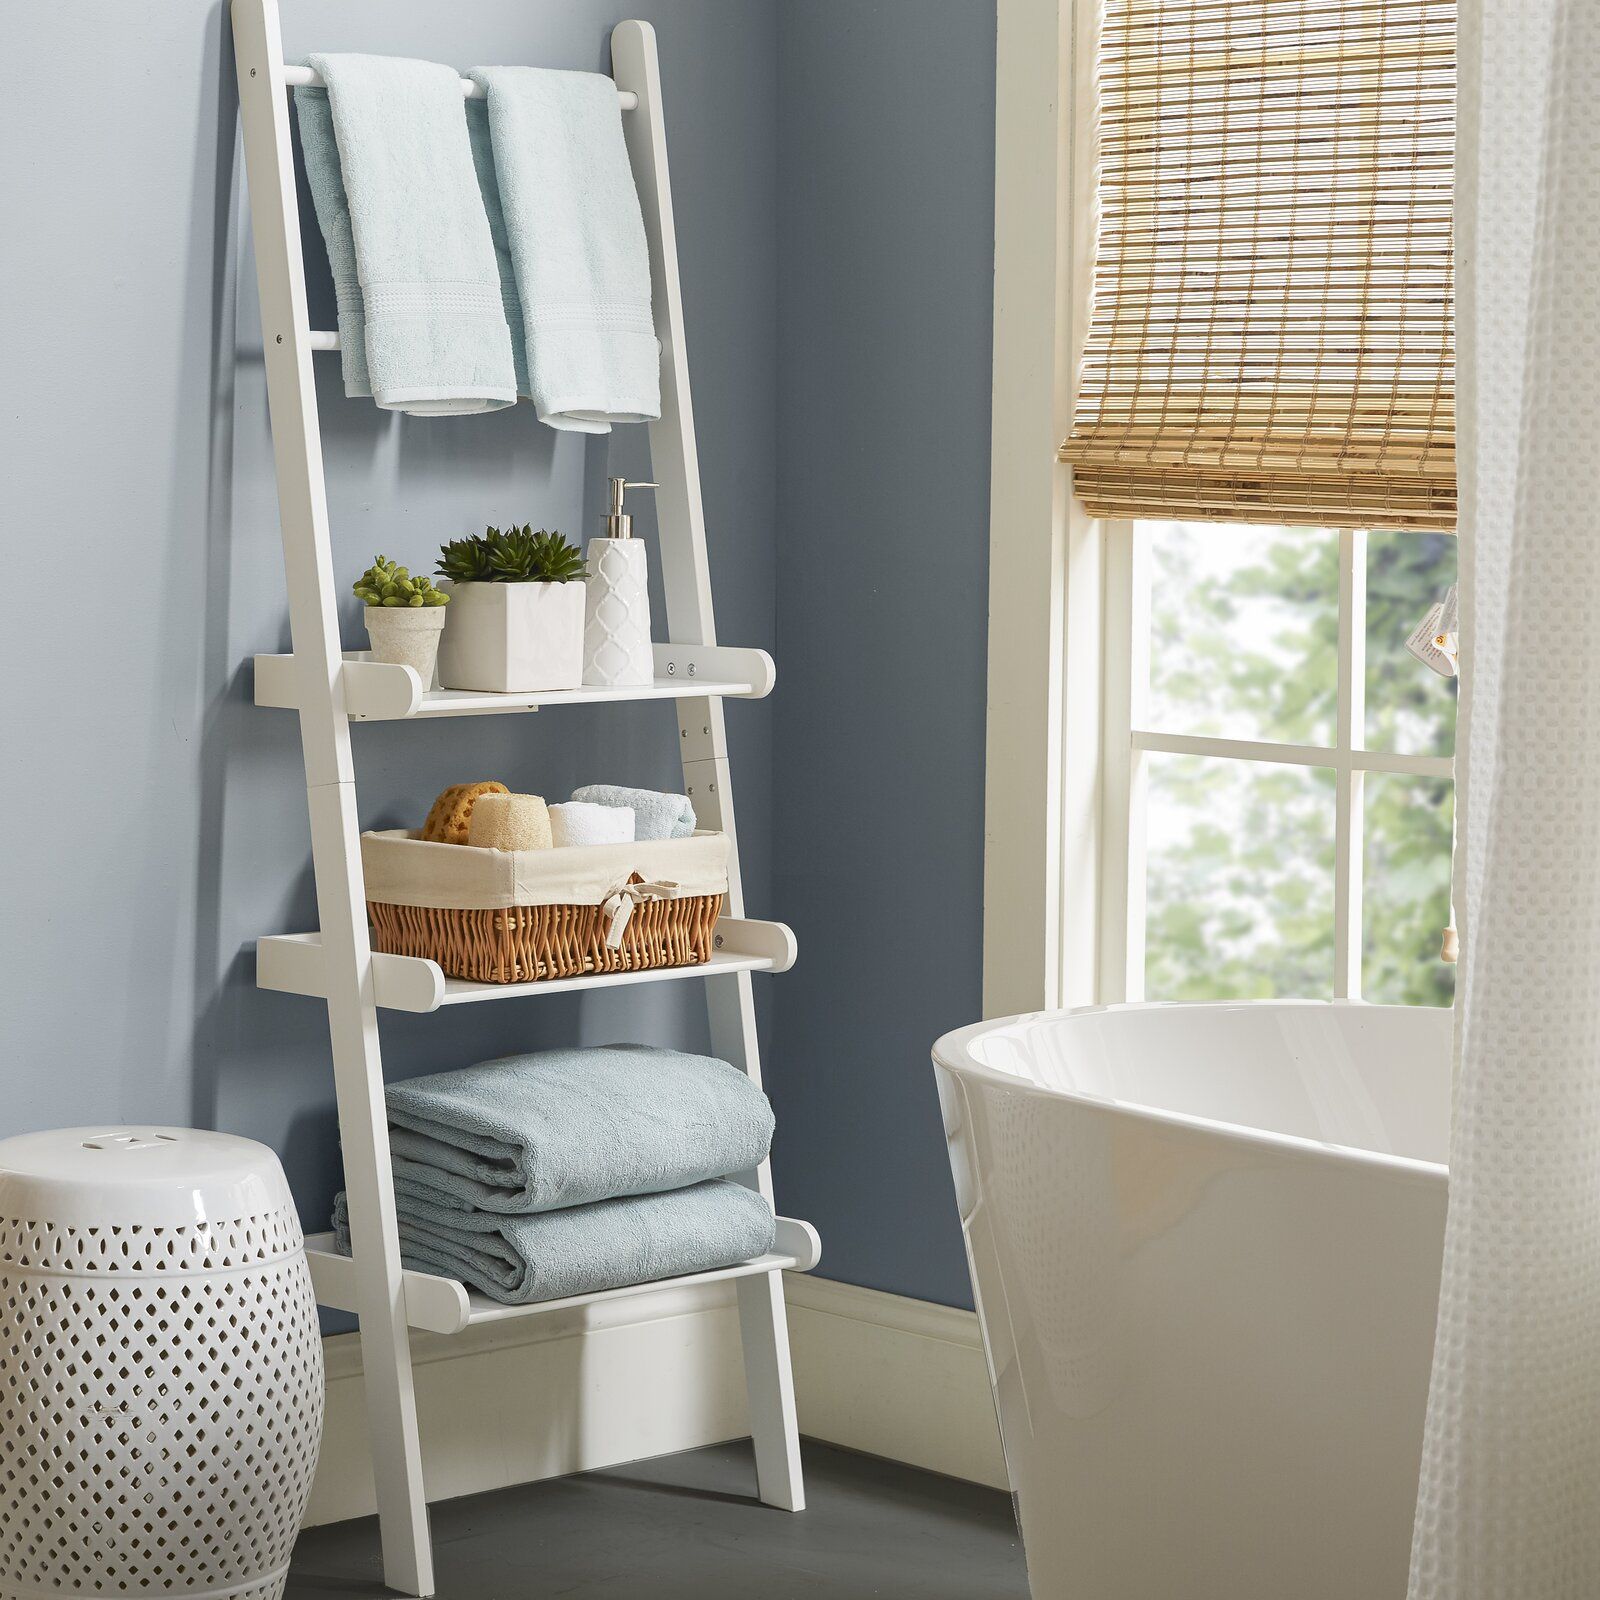 Một chiếc kệ hình thang dựa lưng vào tường sẽ giúp cho phòng tắm có thêm không gian sắp xếp khăn lau, dầu gội, sữa tắm và cả một vài chậu cảnh trang trí.